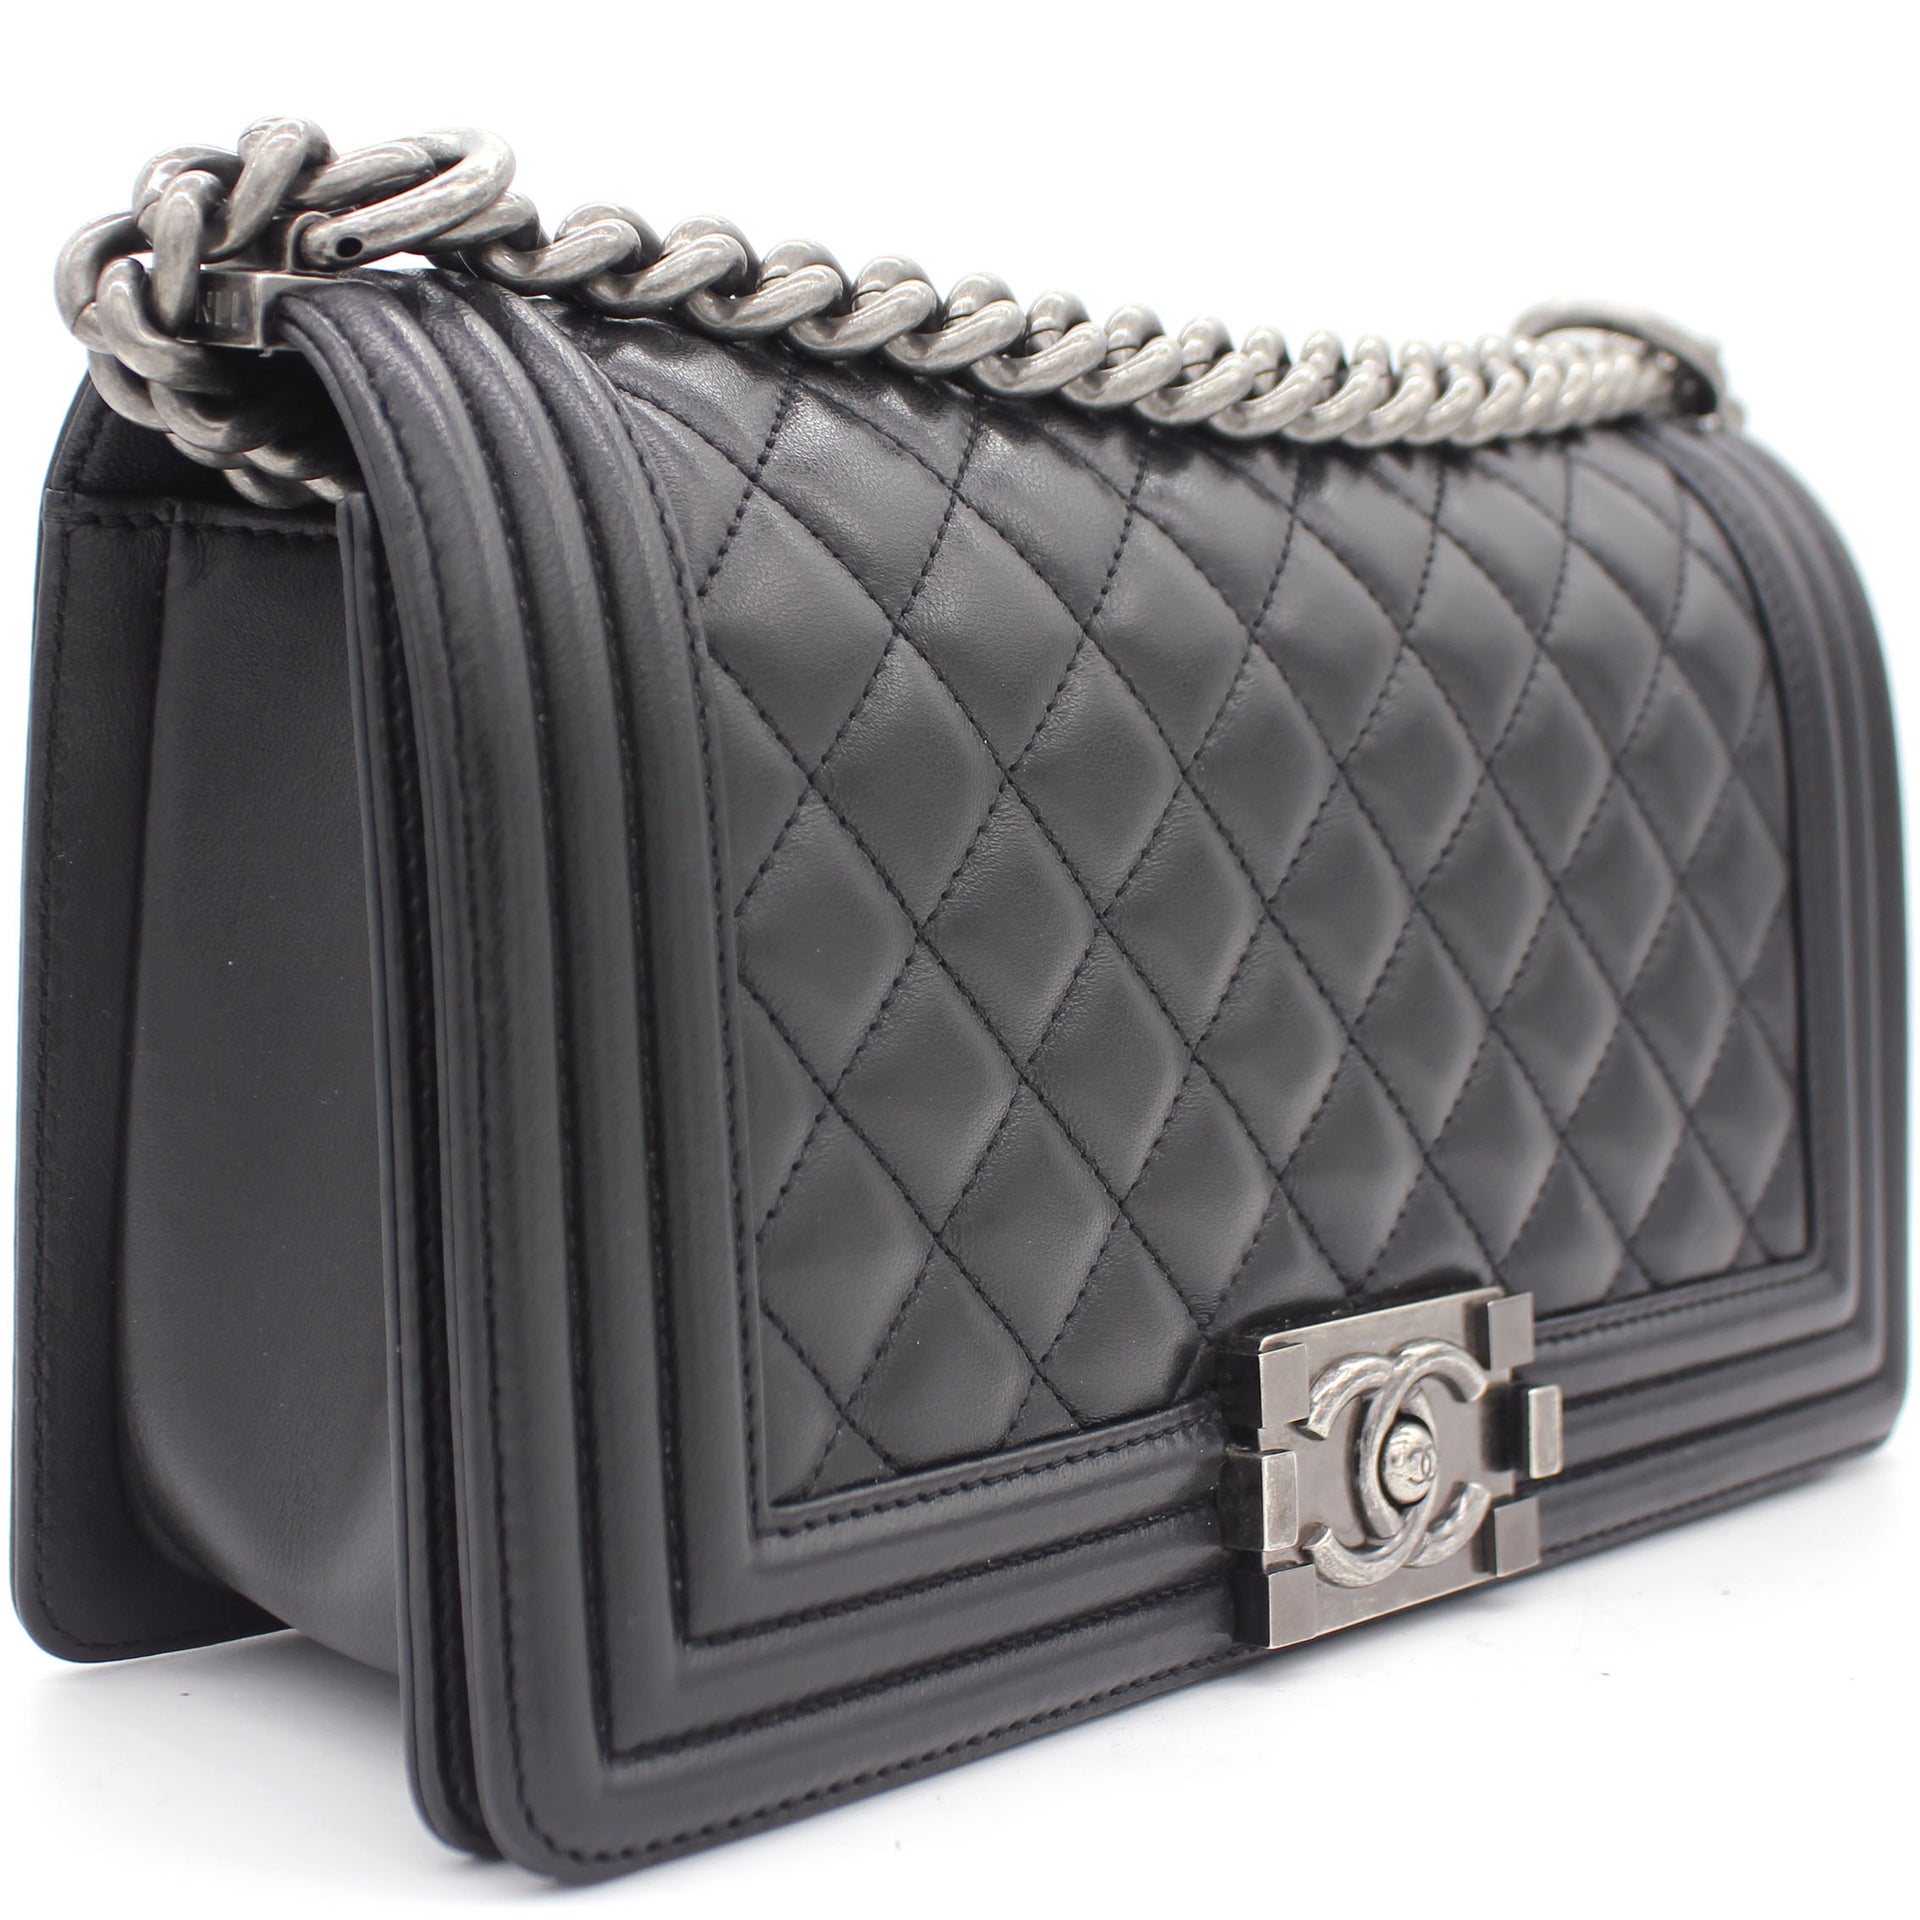 Túi xách Chanel Lambskin Classic Flap Bag siêu cấp da cừu màu đen size 23cm   AS9916  Túi xách cao cấp những mẫu túi siêu cấp like authentic cực đẹp